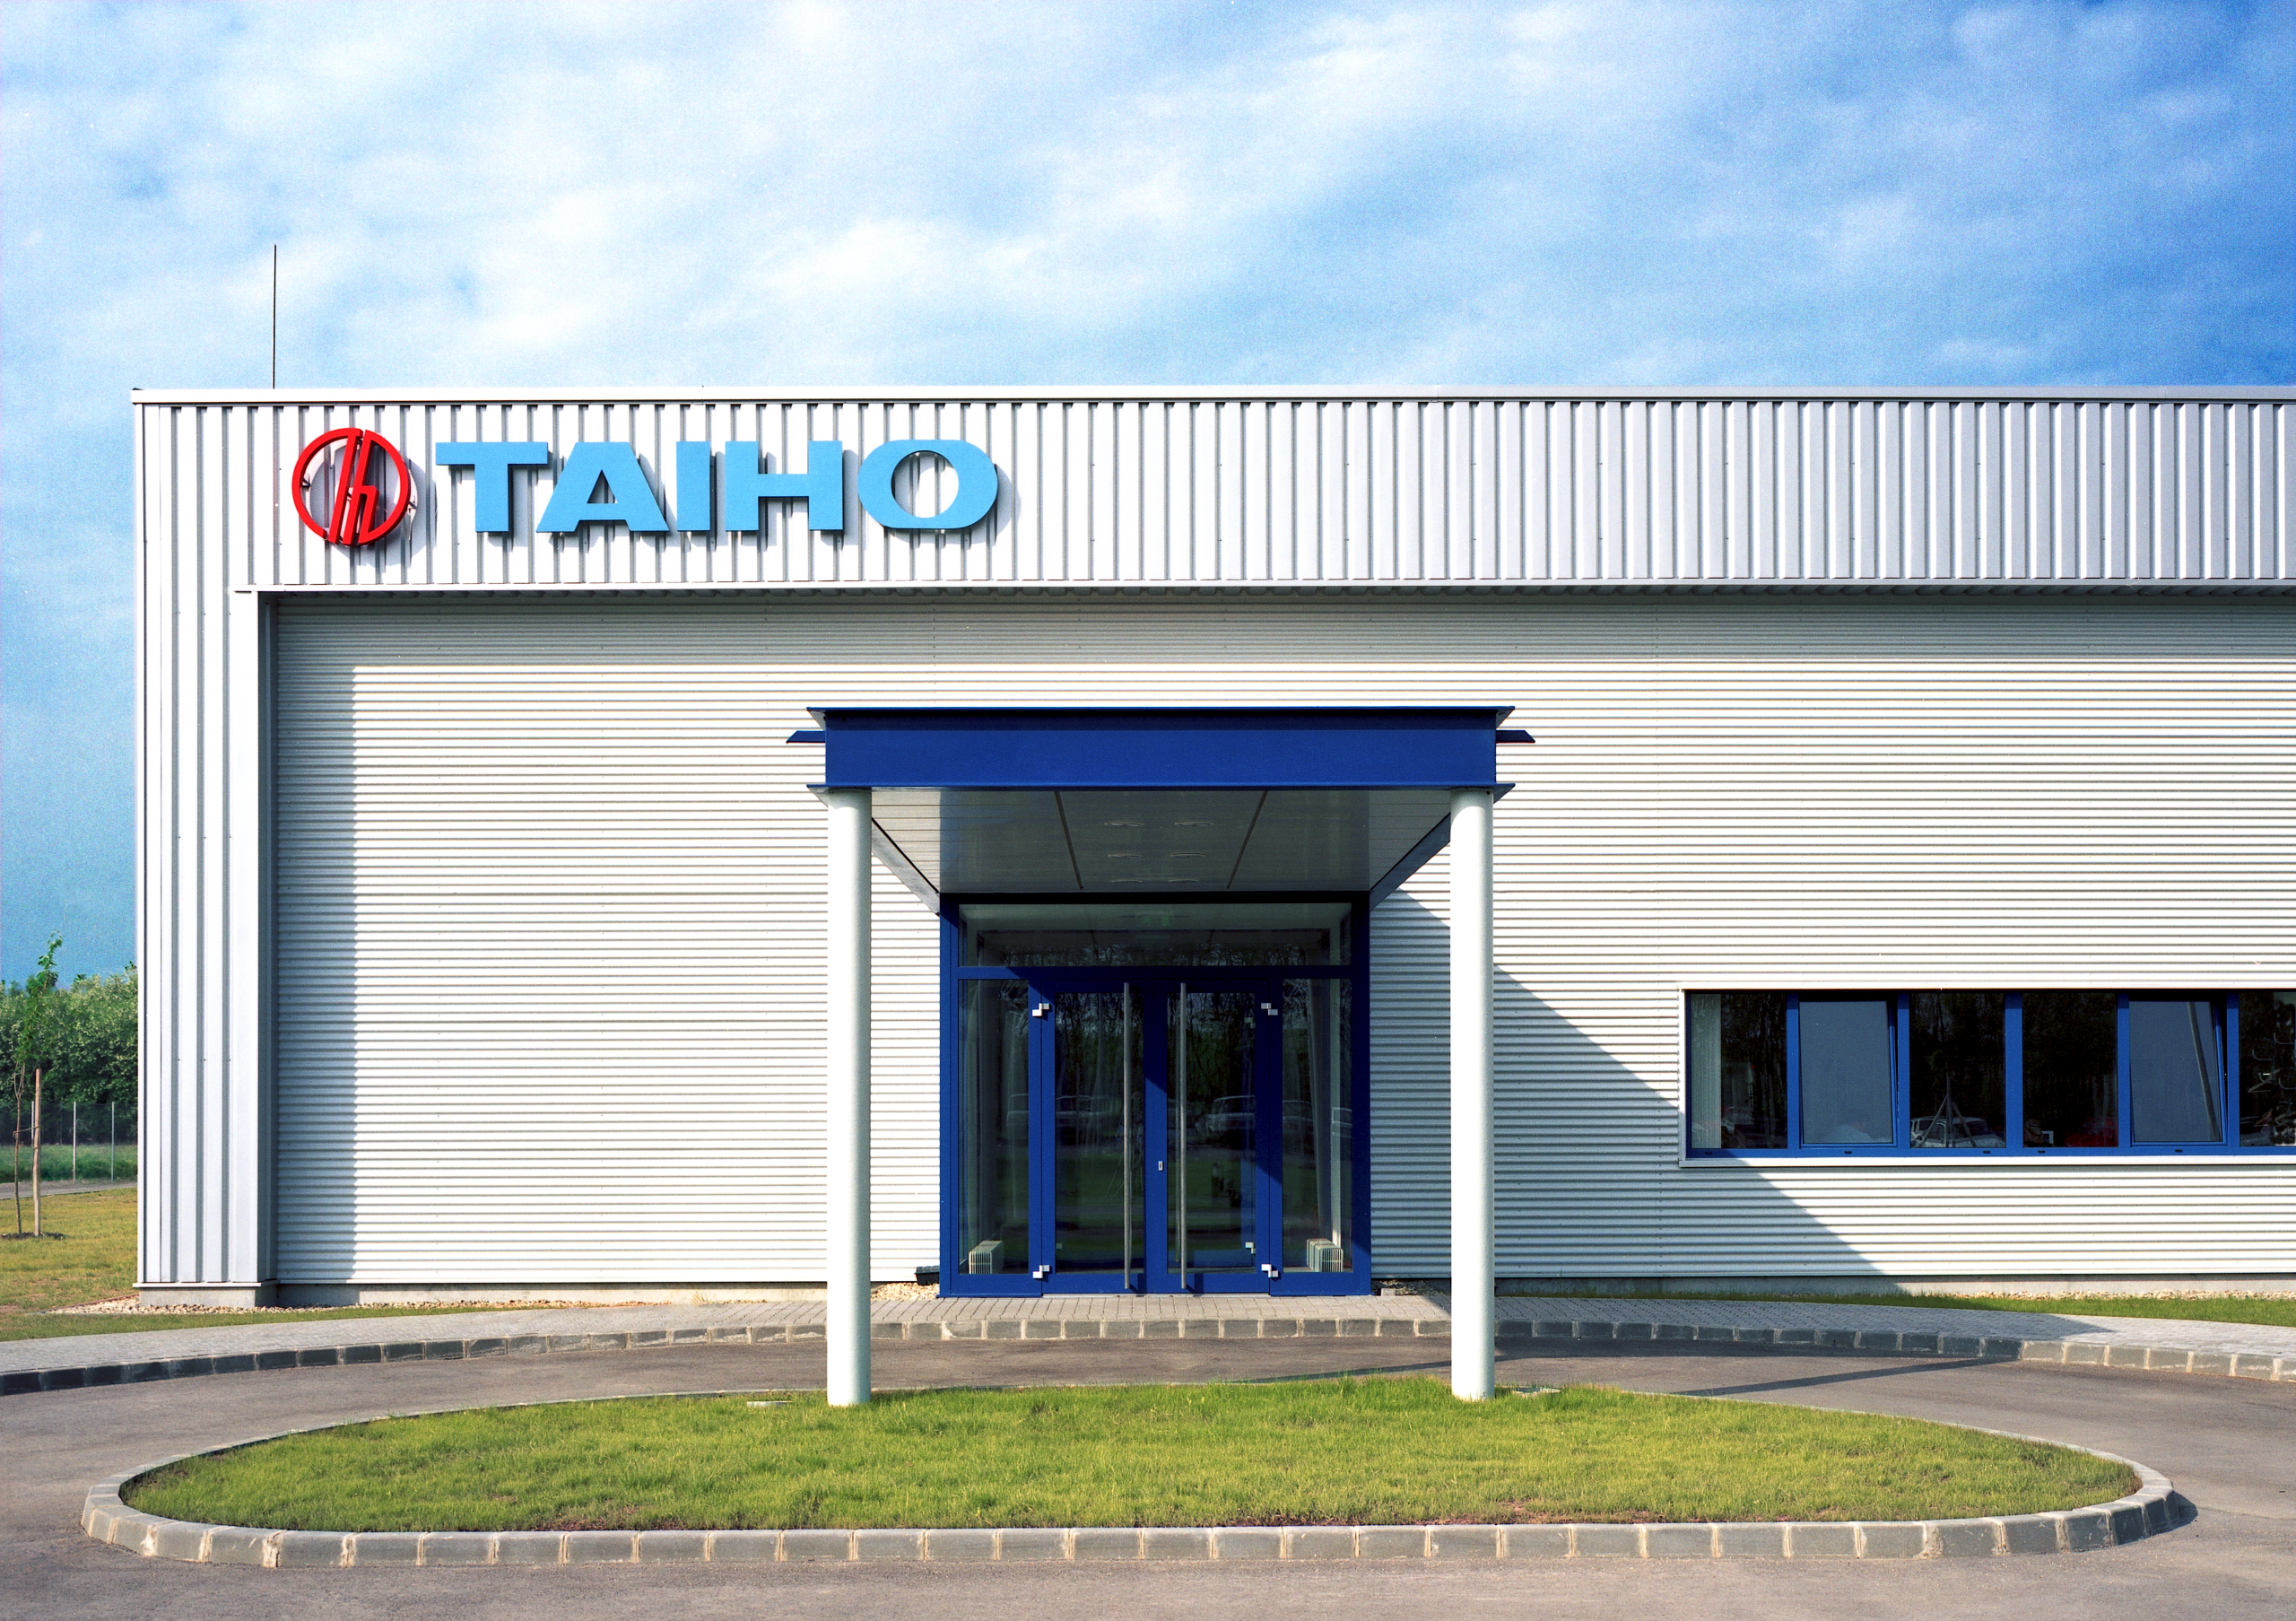 Moderne Industriebau-Fassade mit senkrechten weißen Blechpaneelen, großem blauen Eingangsportal und Firmenlogo "TAIHO" in Rot und Blau.